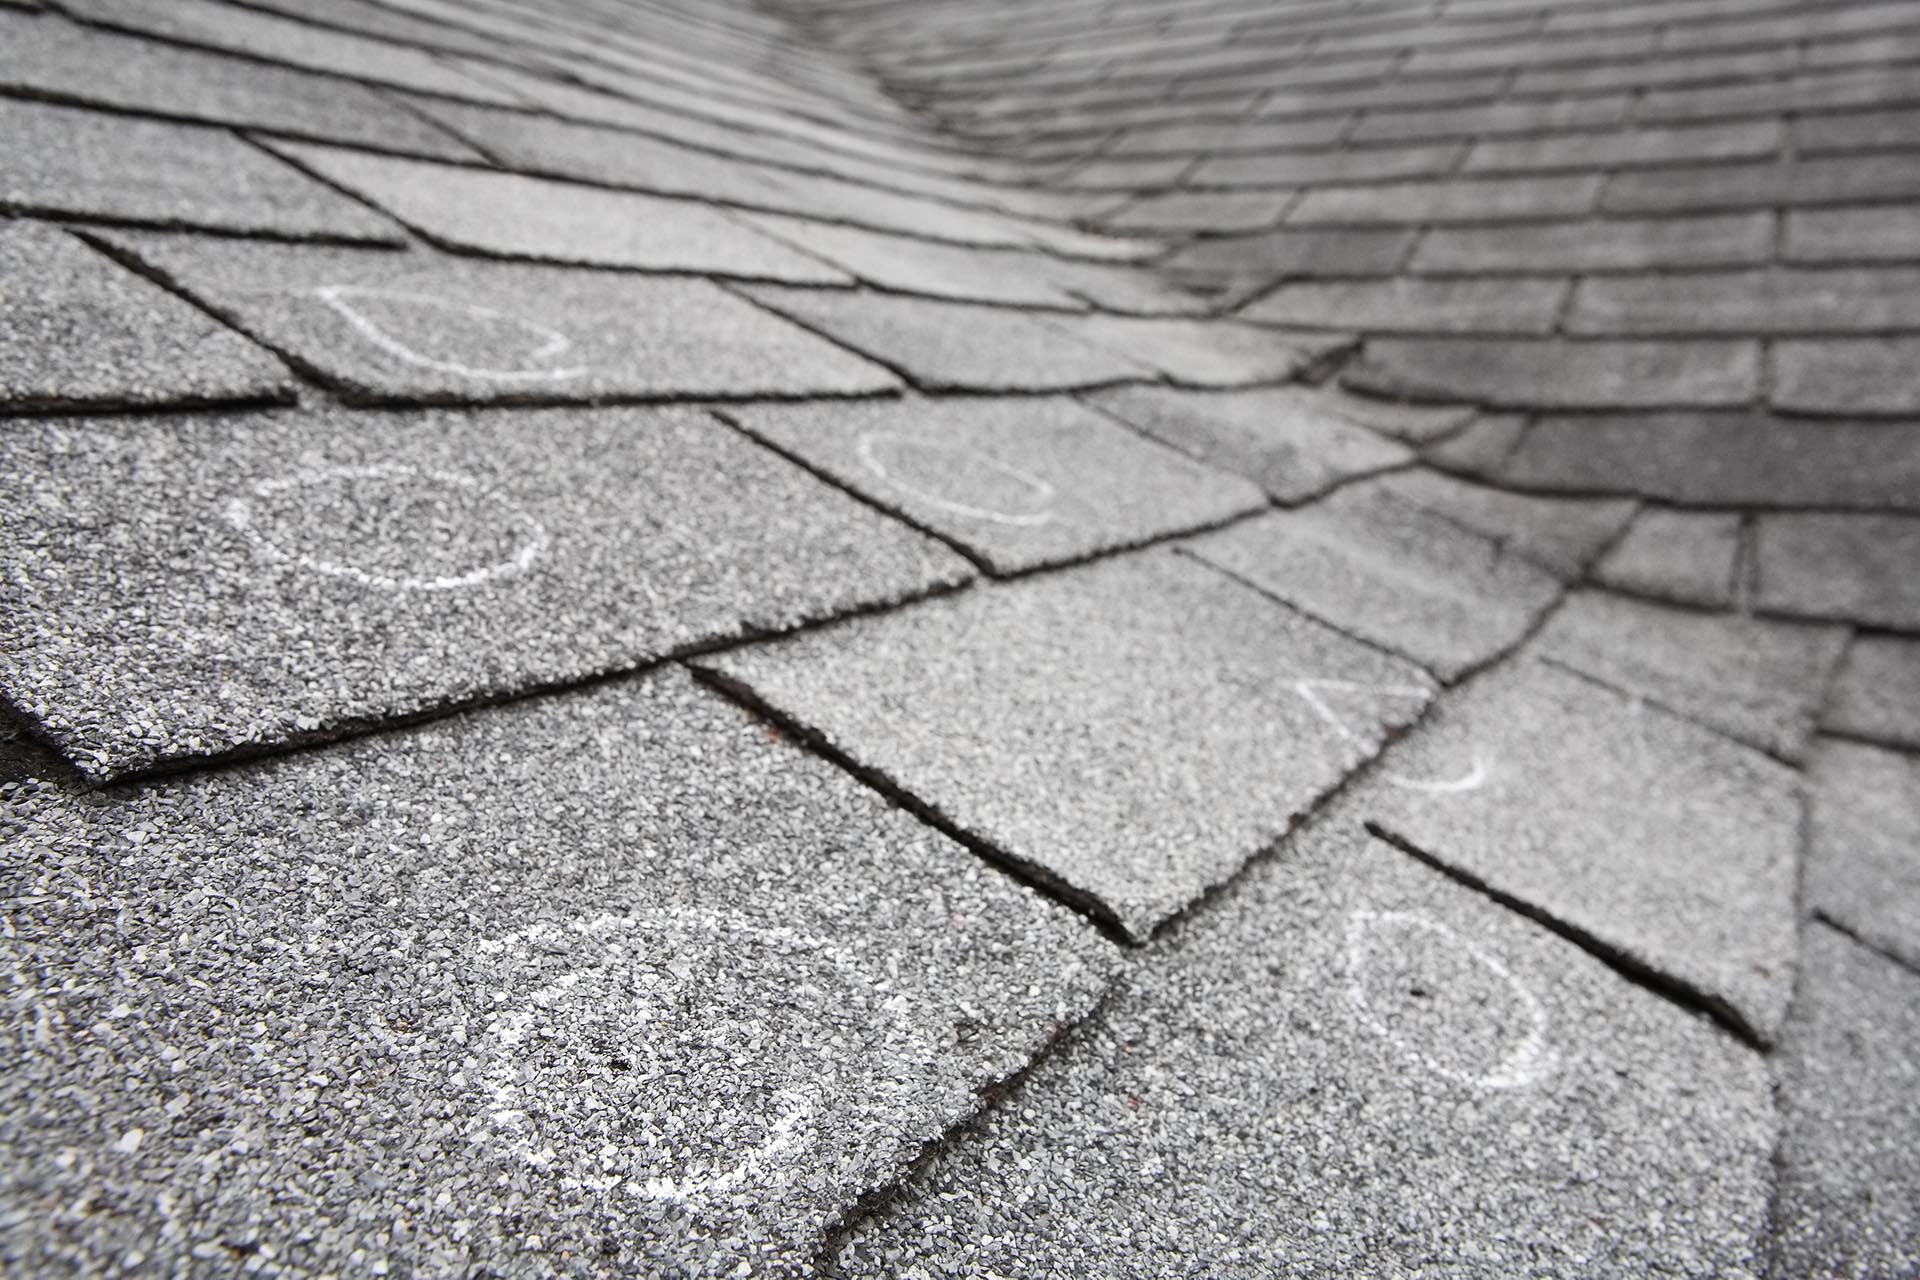 Marking Roof Damage on shingle roof